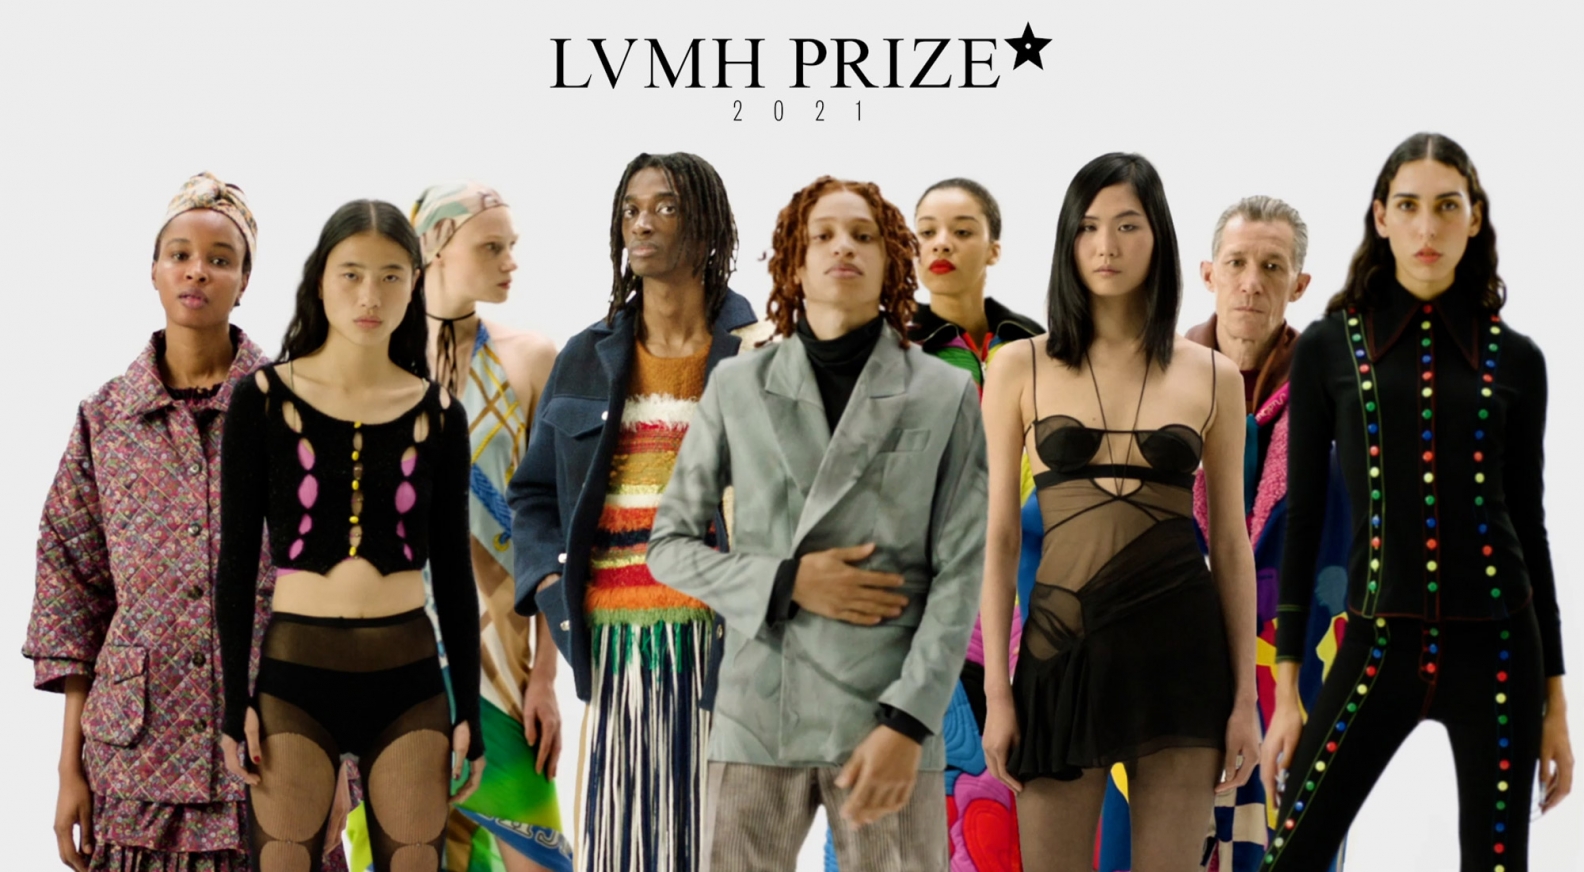 Nensi Dojaka wins 2021 LVMH Prize